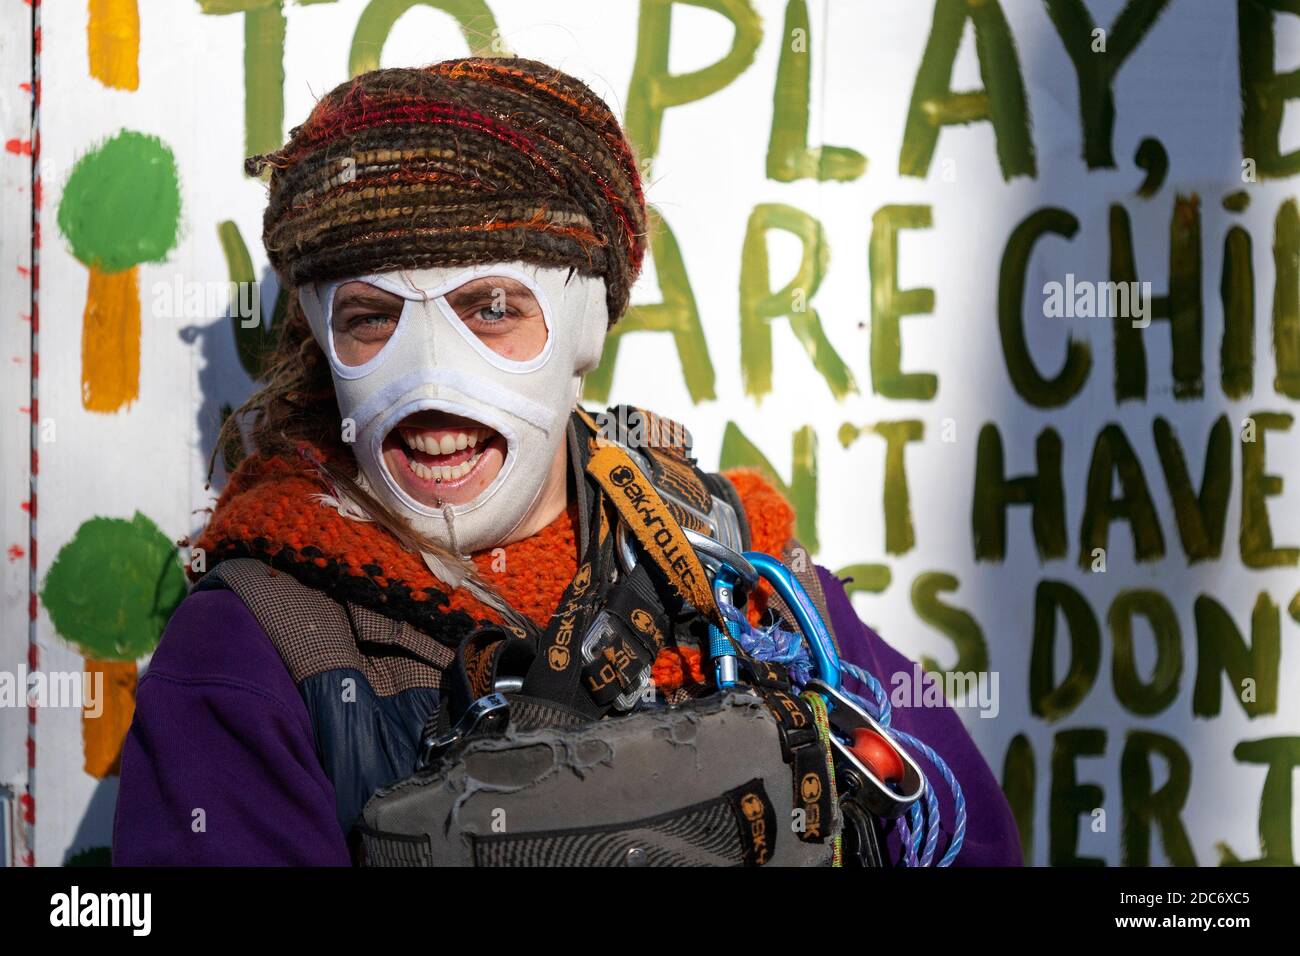 Peacock, activiste de la rébellion contre l'extinction, sourit derrière un masque ignifugé dans un camp de protestation. Dixon Clark court, Highbury Corner. Banque D'Images